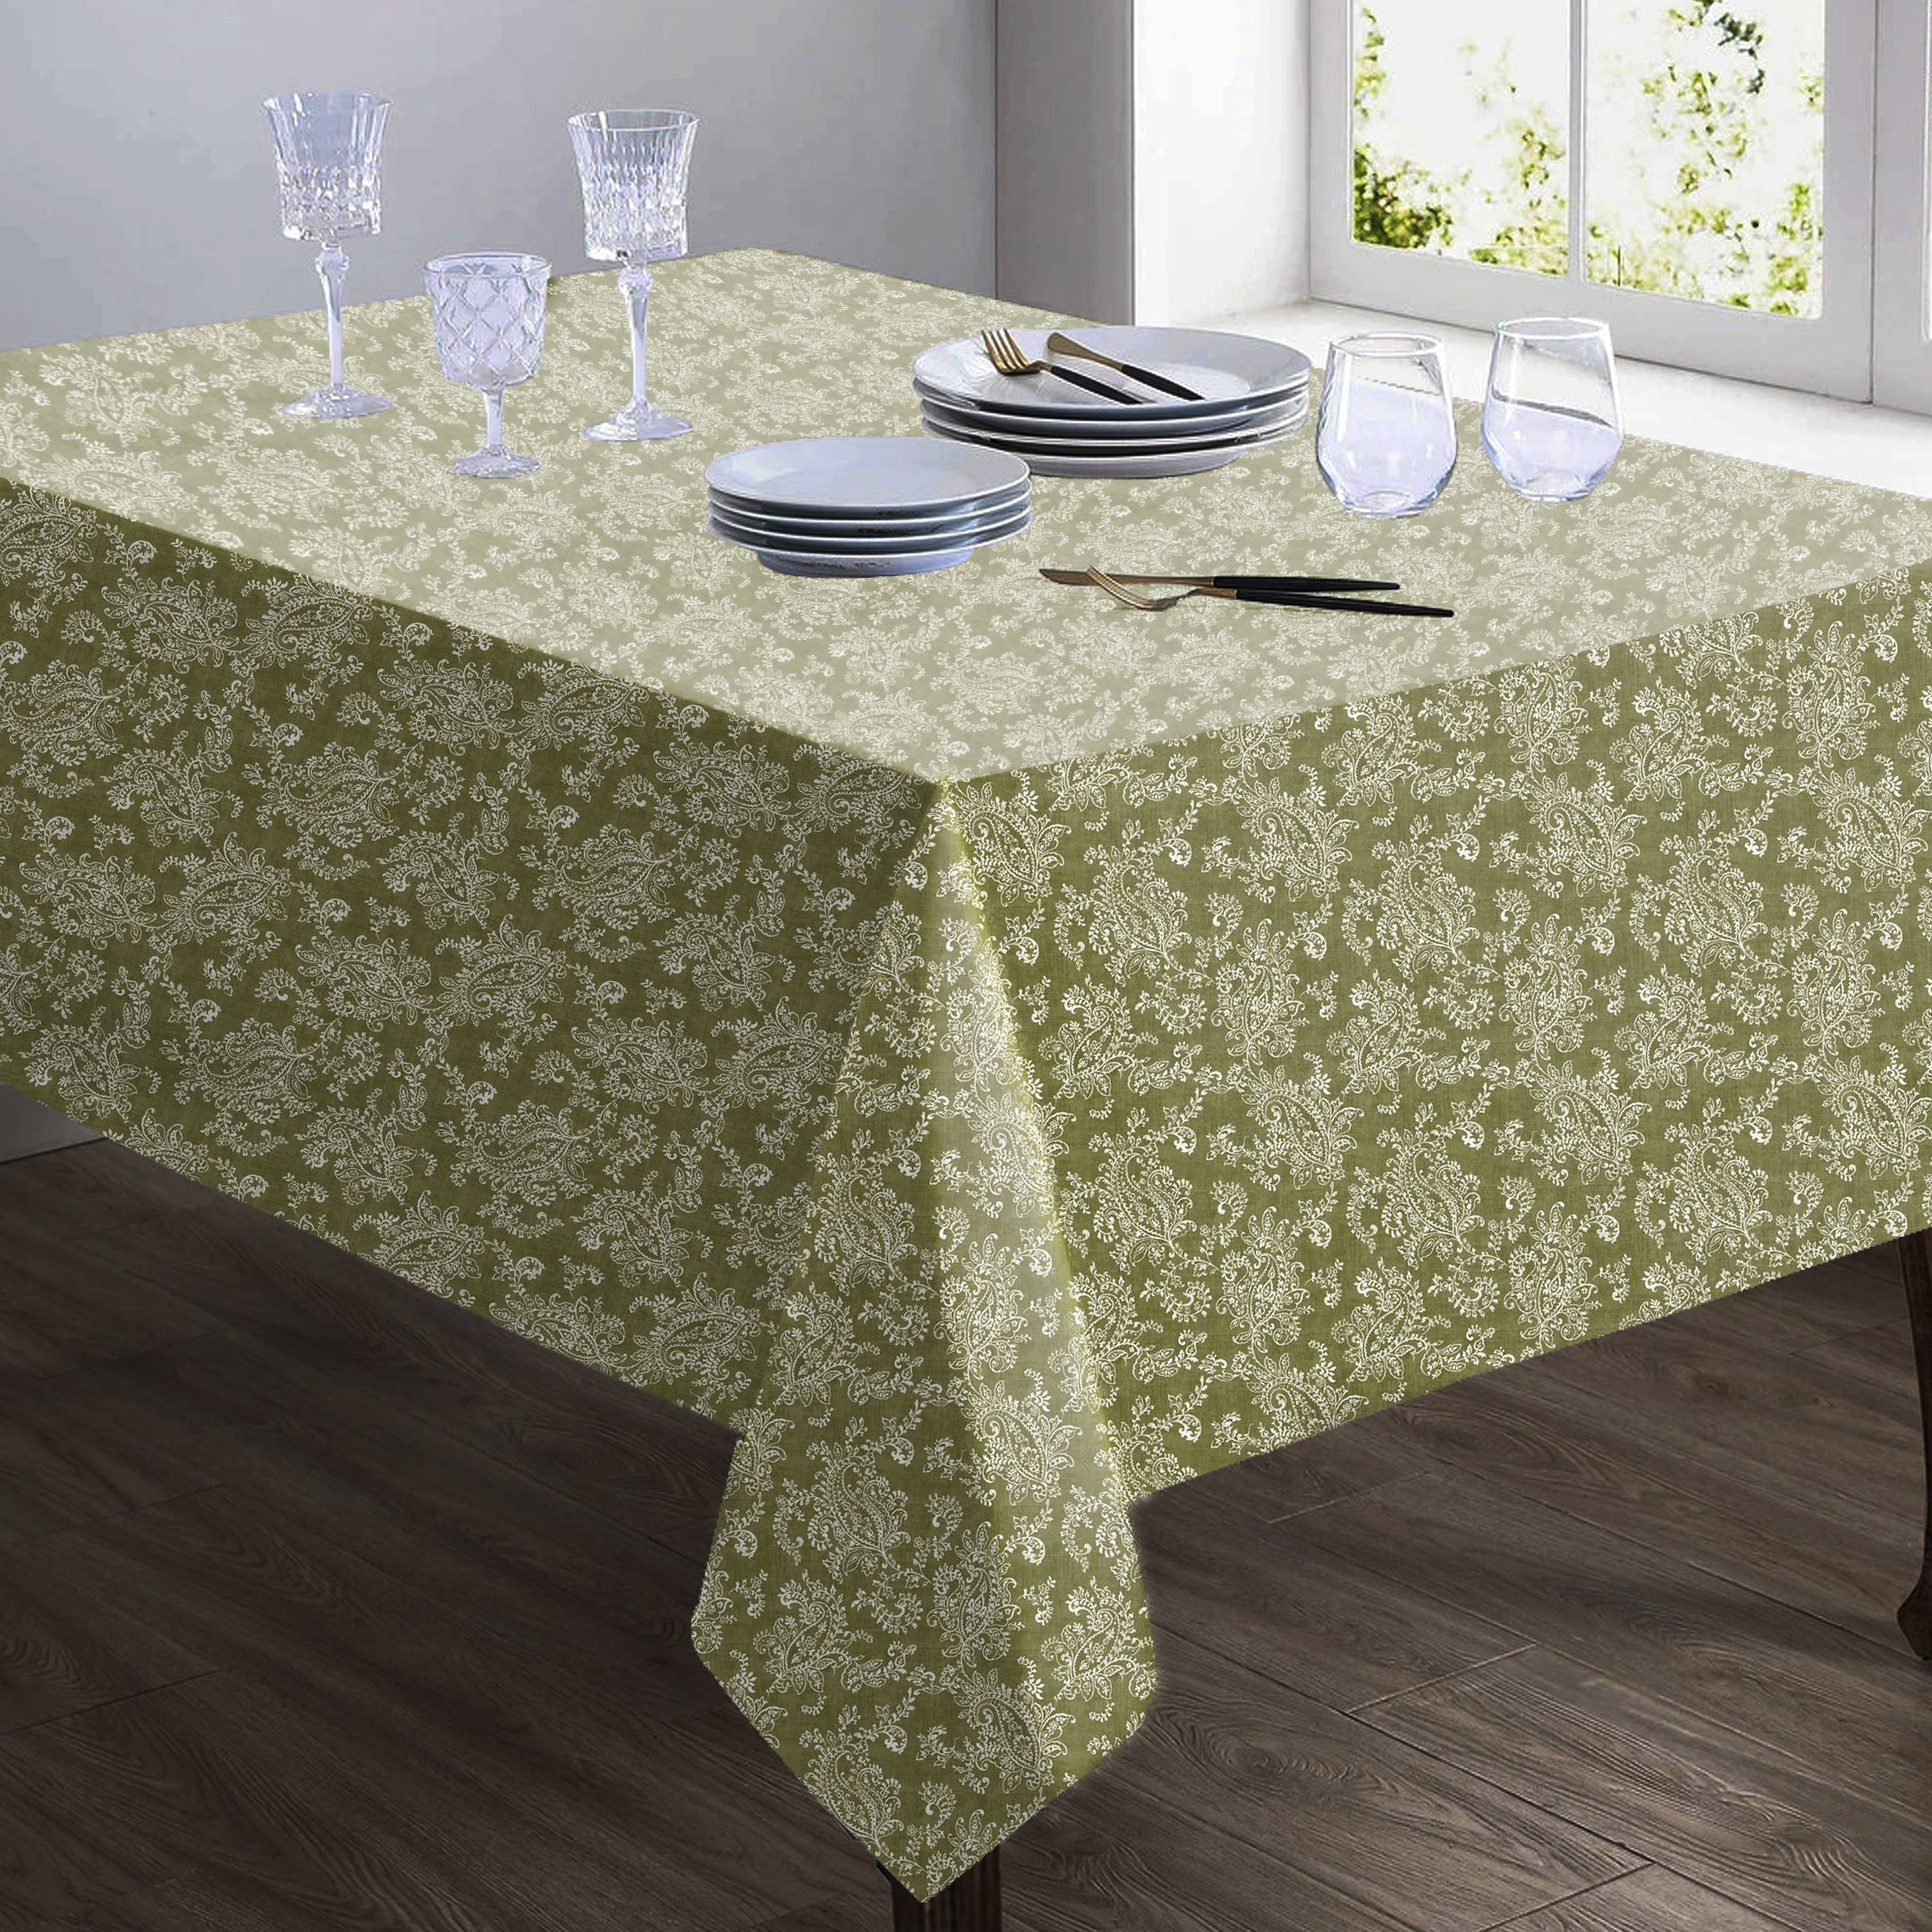 Jodhpur Flowers 6 Seater Table Cloth Olive